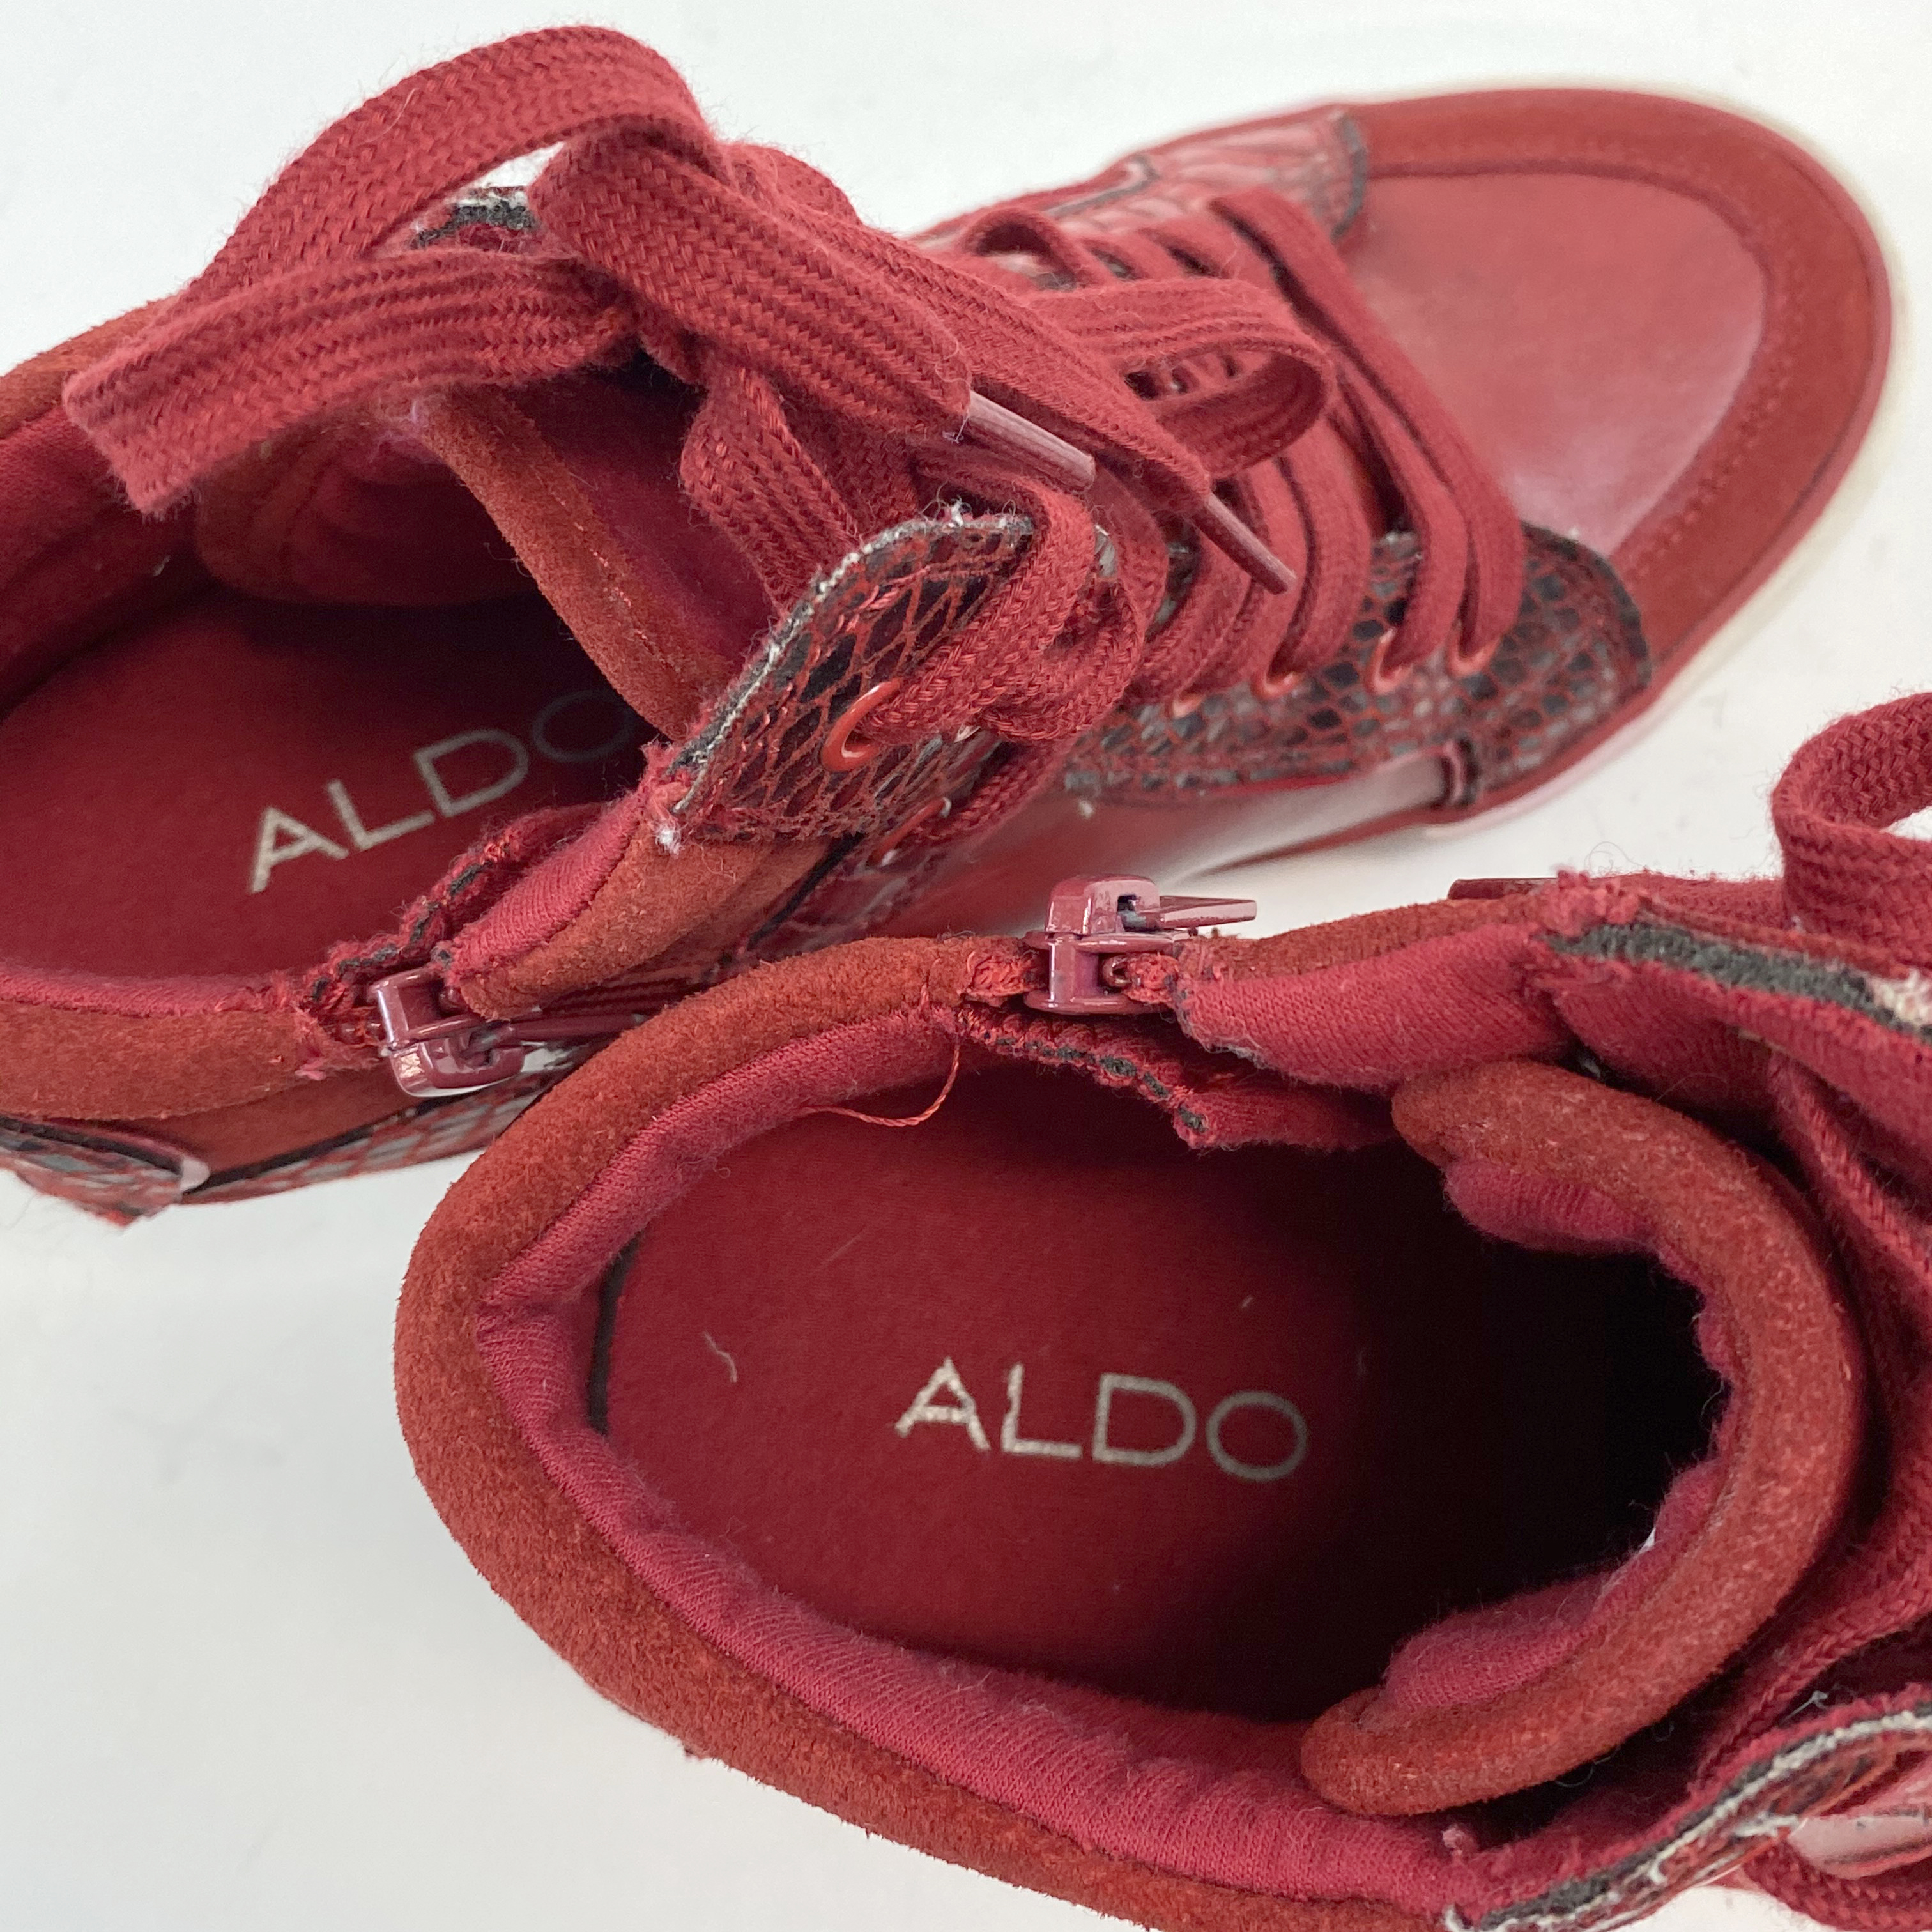 Aldo Red Sneakers | Red sneakers, Aldo, Sneakers